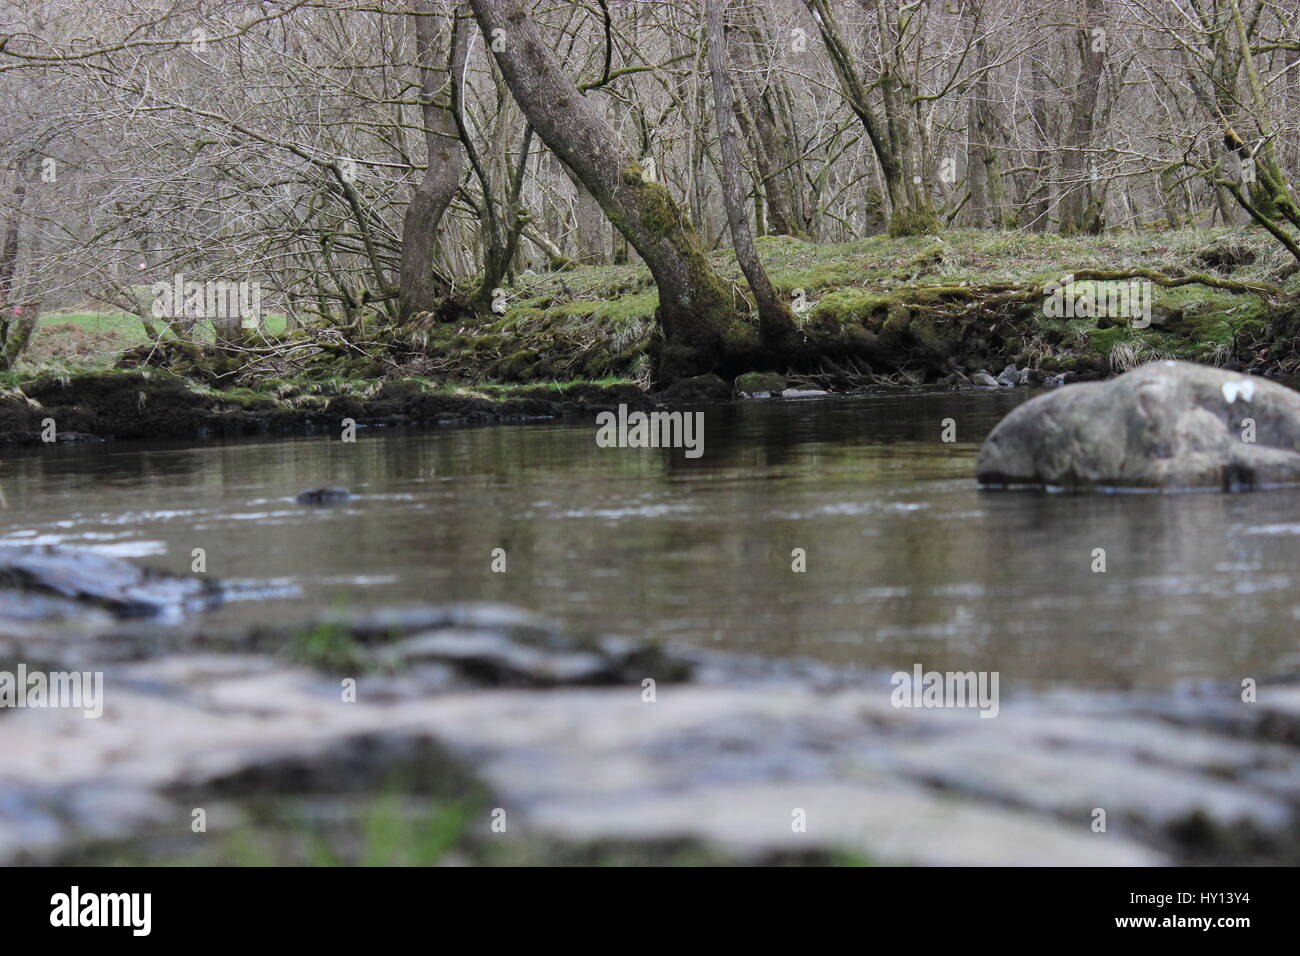 Bas capture d'un fleuve lent situé dans un bois Banque D'Images